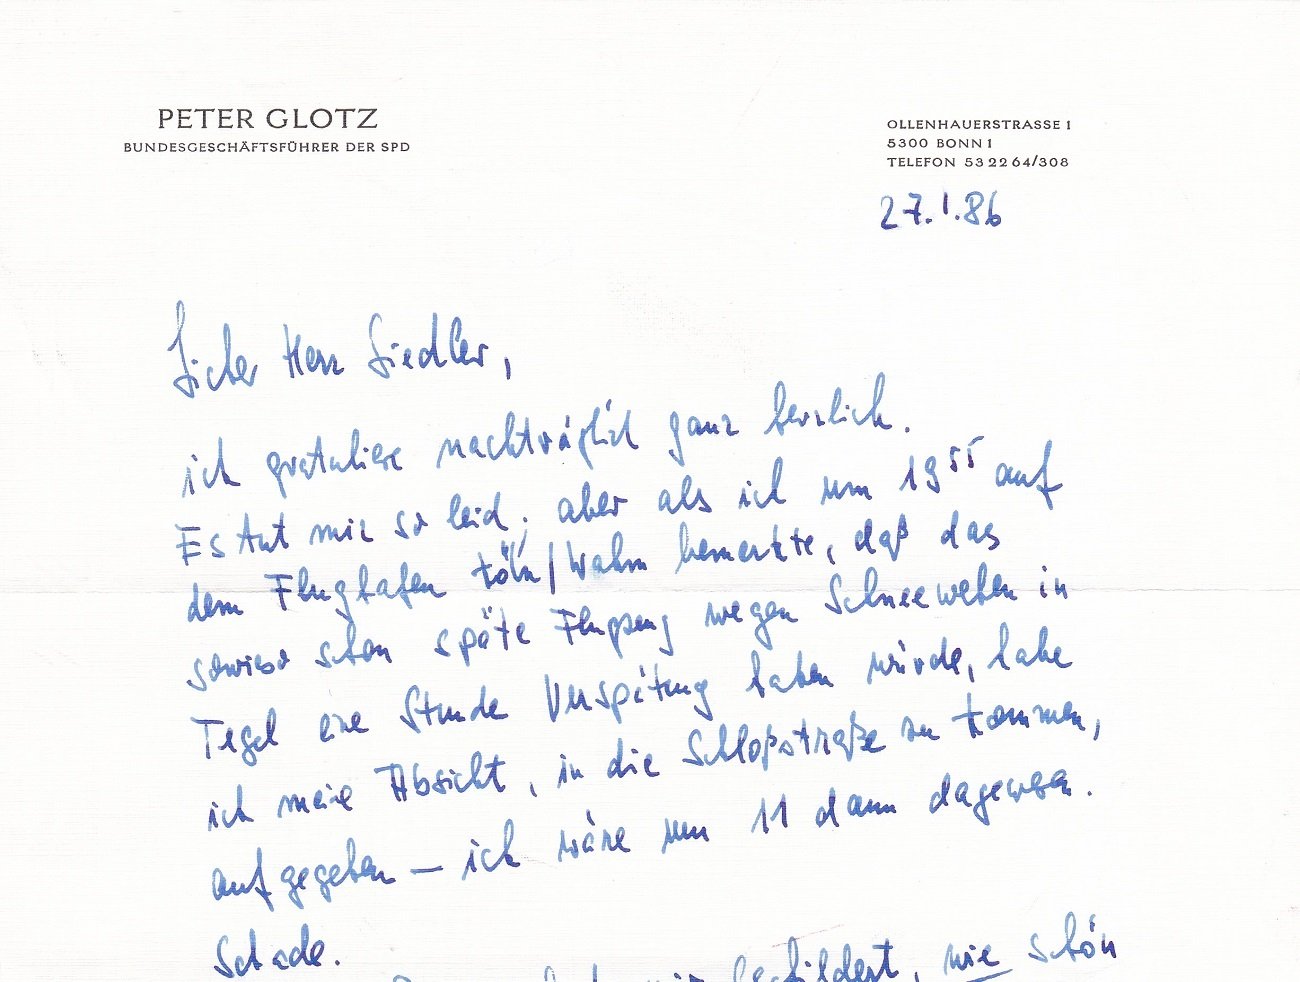 GLOTZ, Peter:  Brief des SPD-Politikers und Publizisten Peter Glotz an den Verleger Wolf Jobst Siedler. Original-Brief im Umfeld des 60. Geburtstags Siedlers im Jahr 1986. 